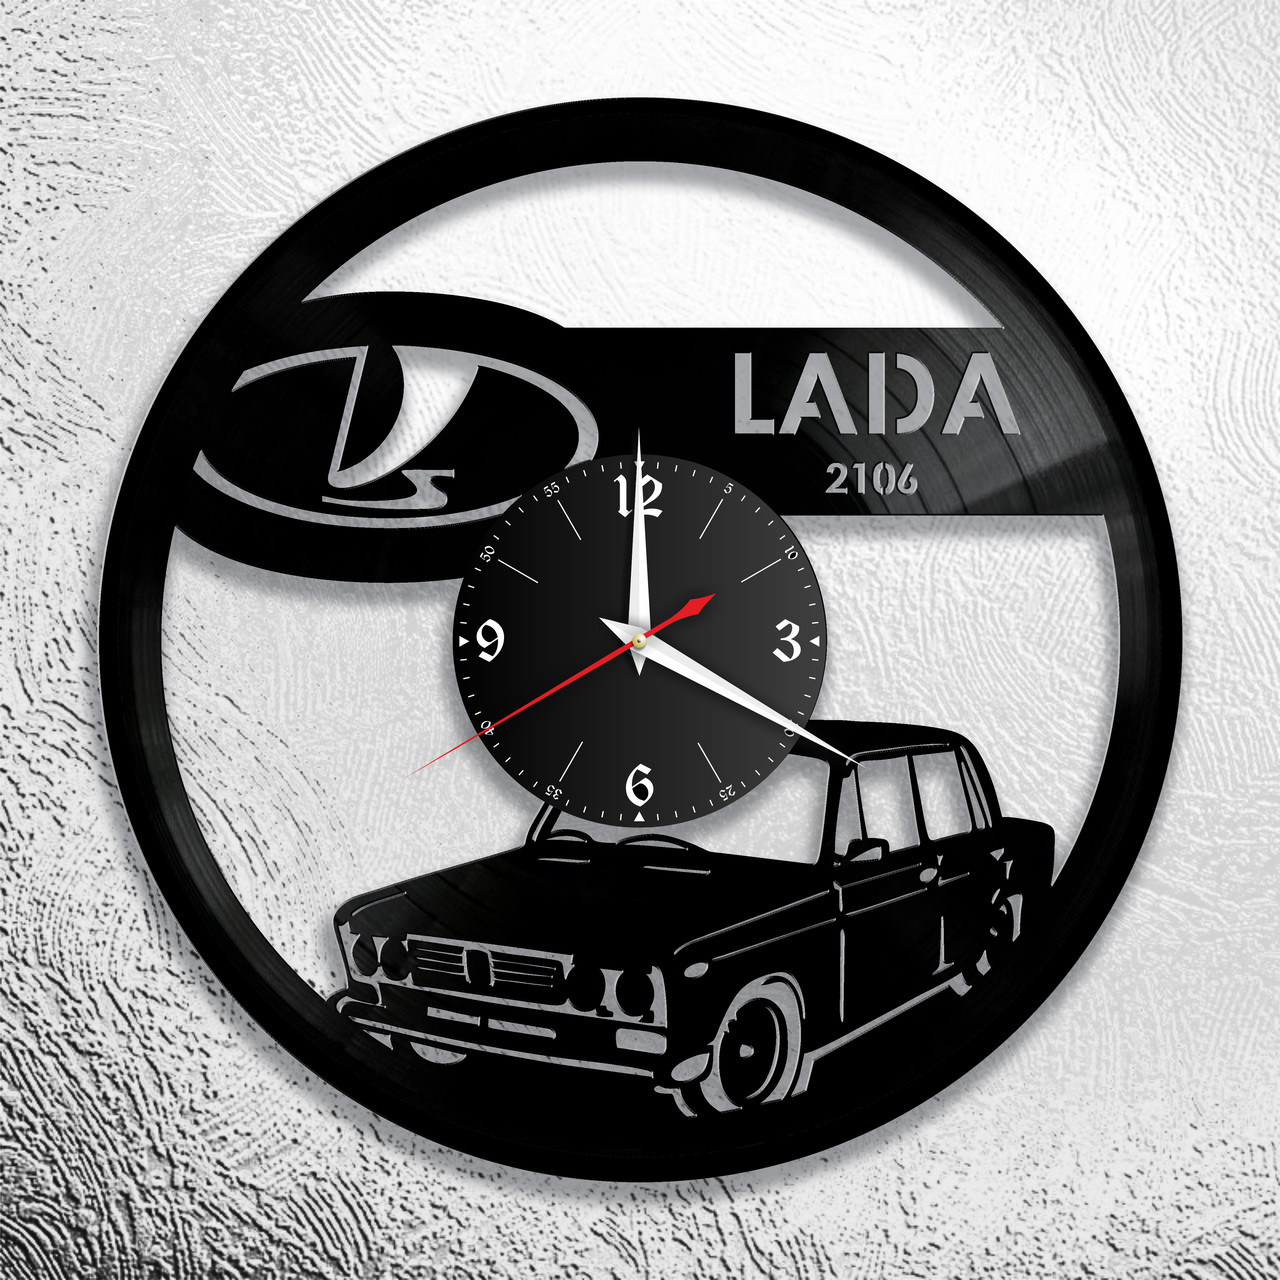 Оригинальные часы из виниловых пластинок  "Lada" версия 1, фото 1